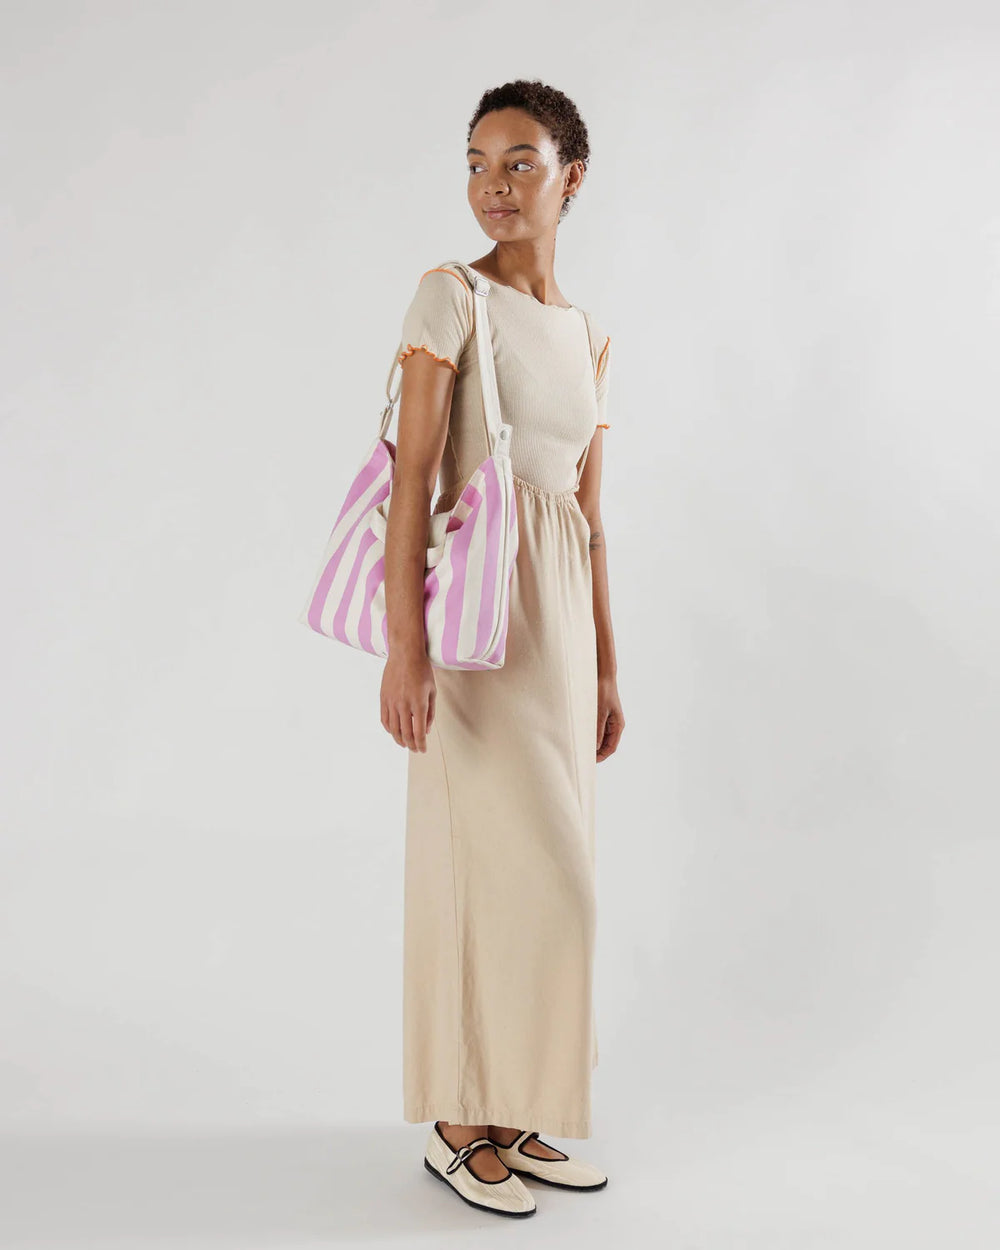 Horizontal Zip Duck Bag – Pink Awning Stripe